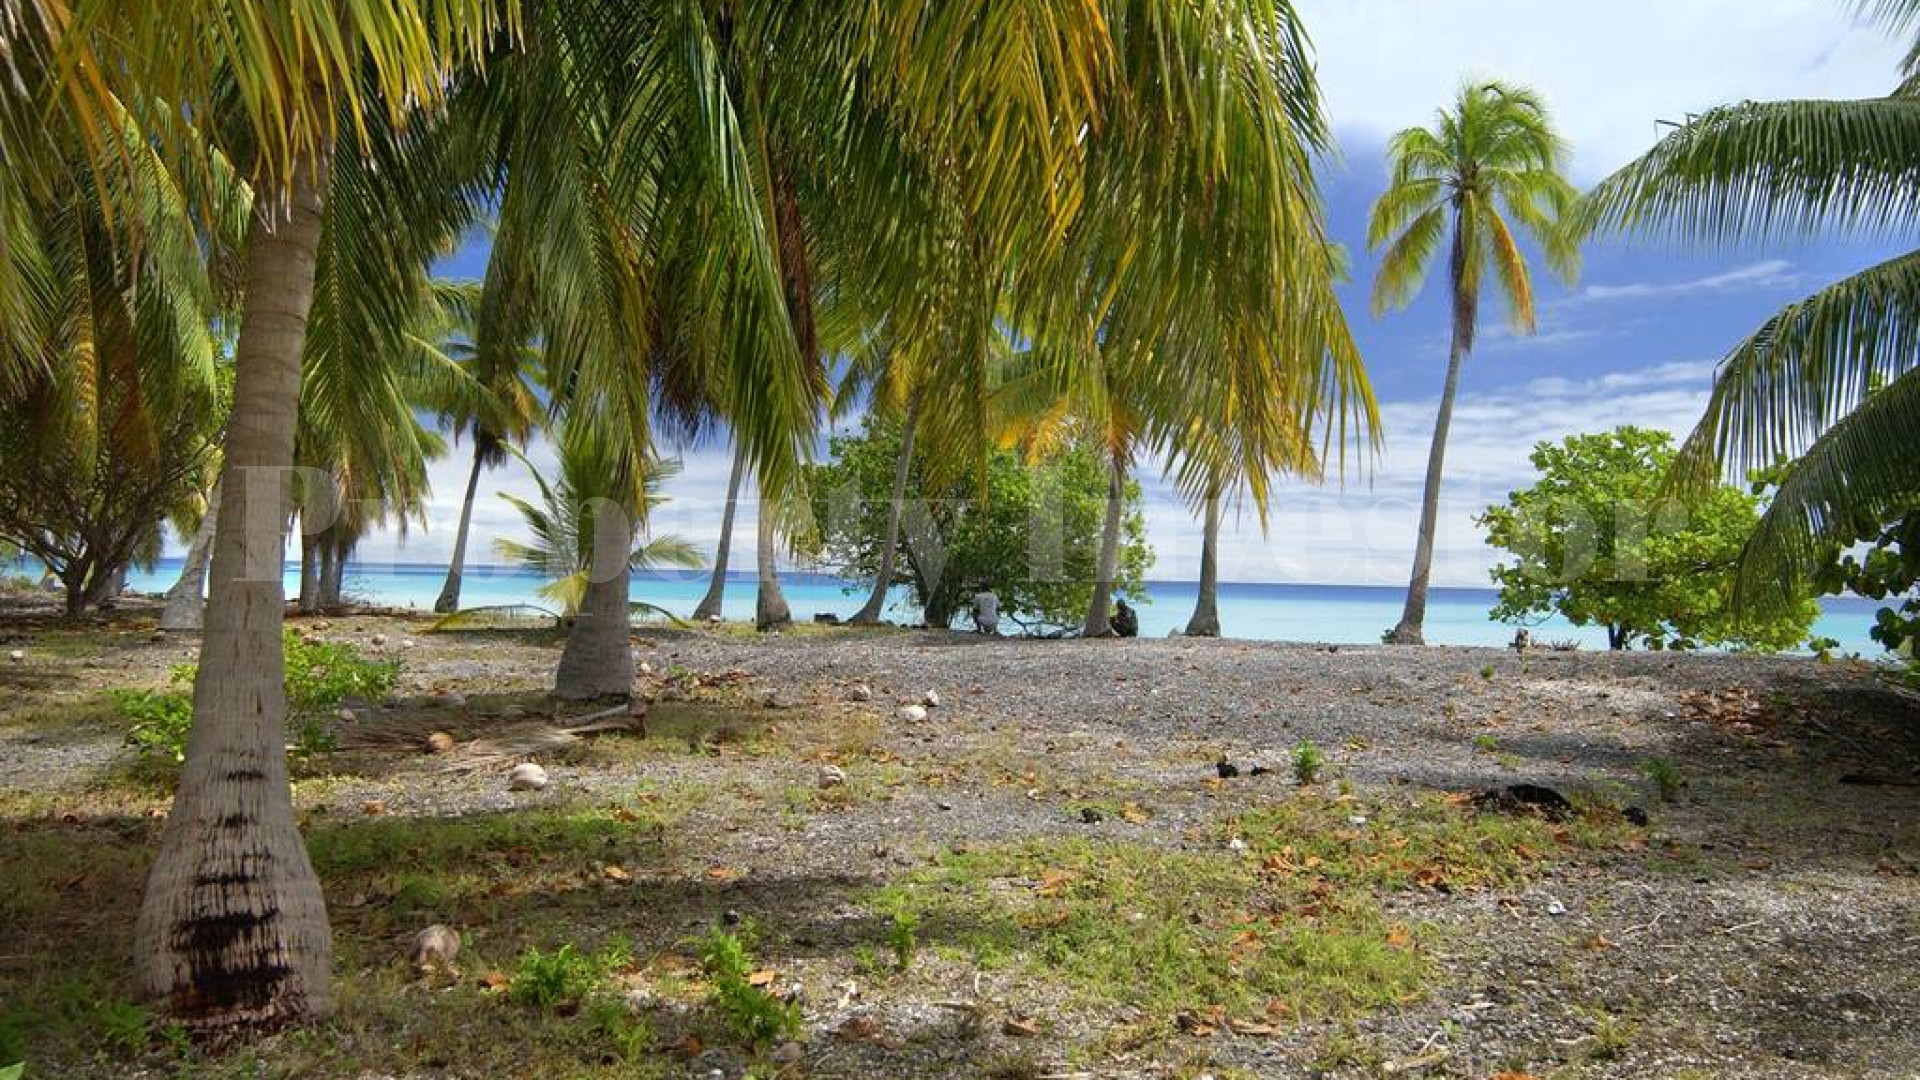 Продаётся частный дикий остров во Французской Полинезии